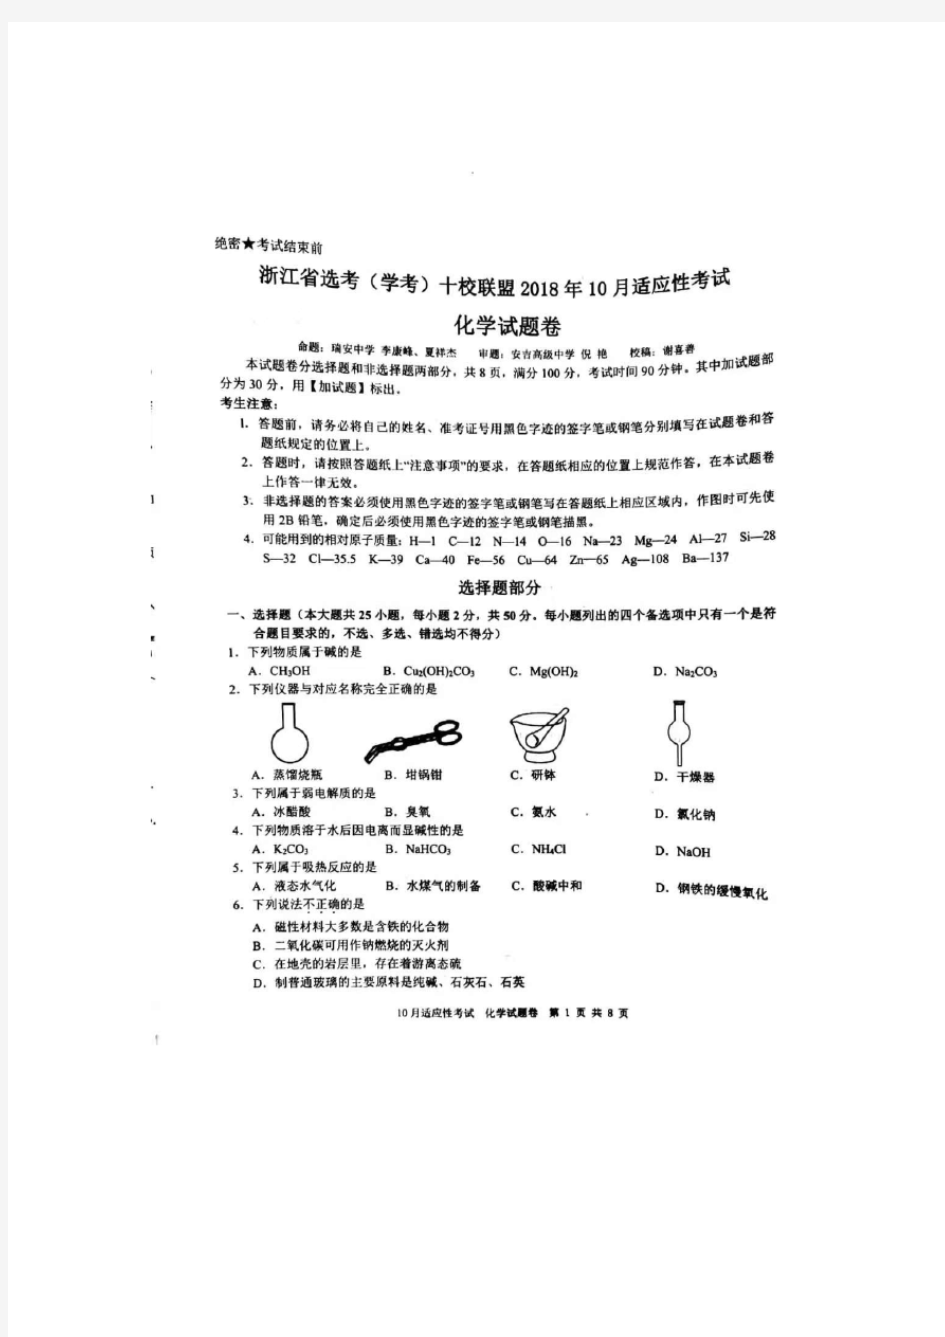 浙江省选考(学考)十校联盟2018年10月适应性考试